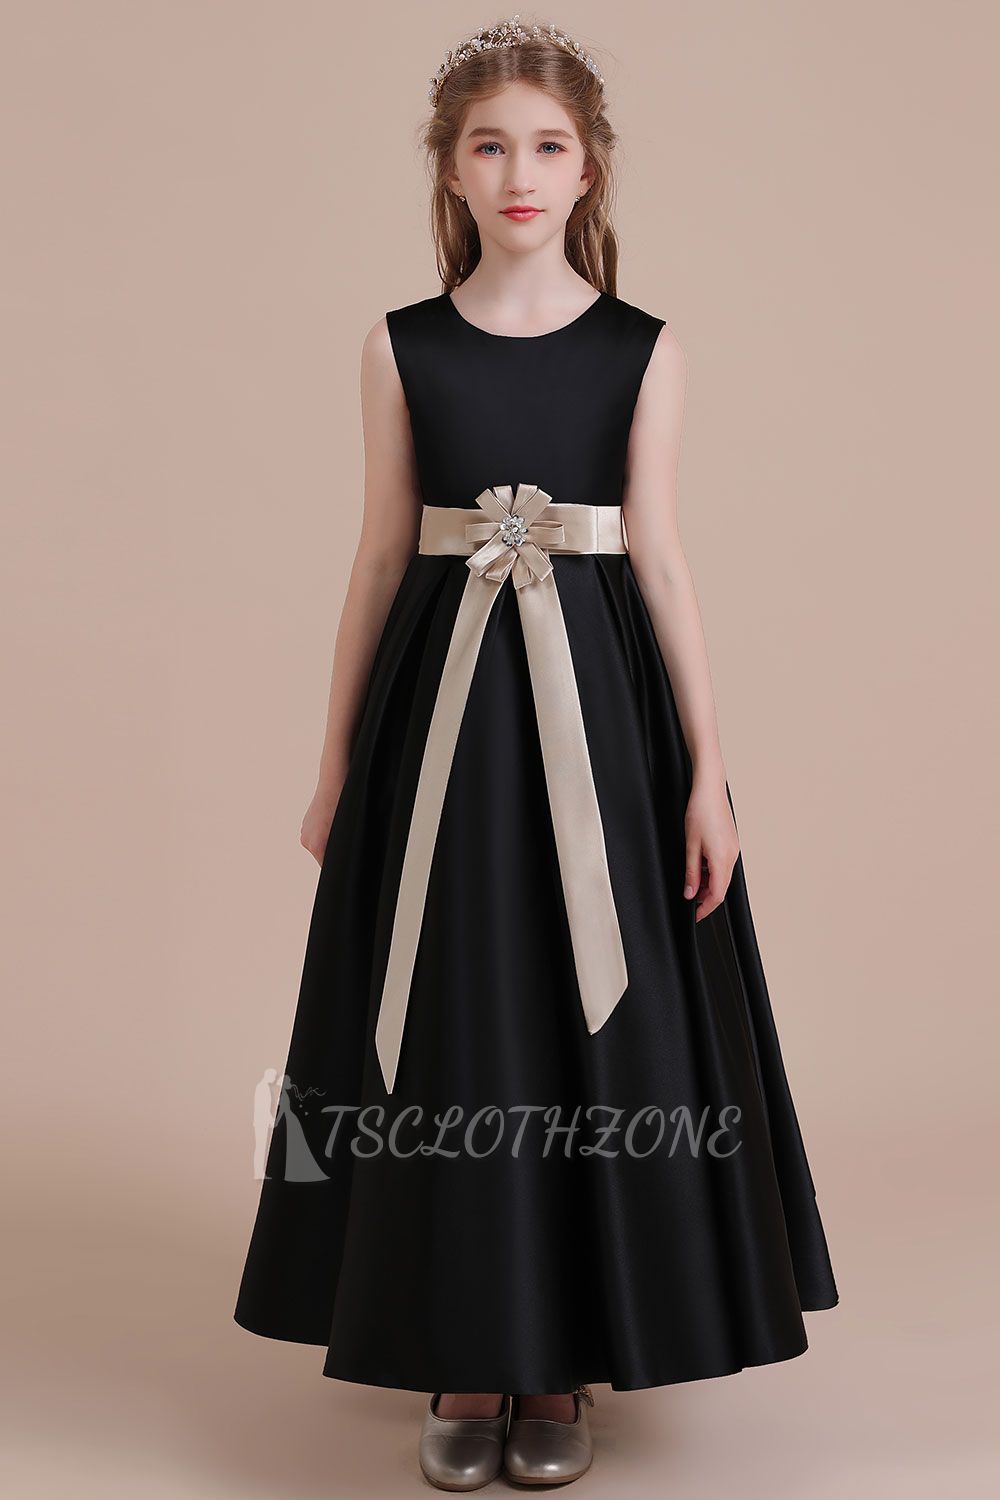 Cute A-line Satin Flower Girl Dress |Cute Sleeveless Little Girls Dress for Wedding